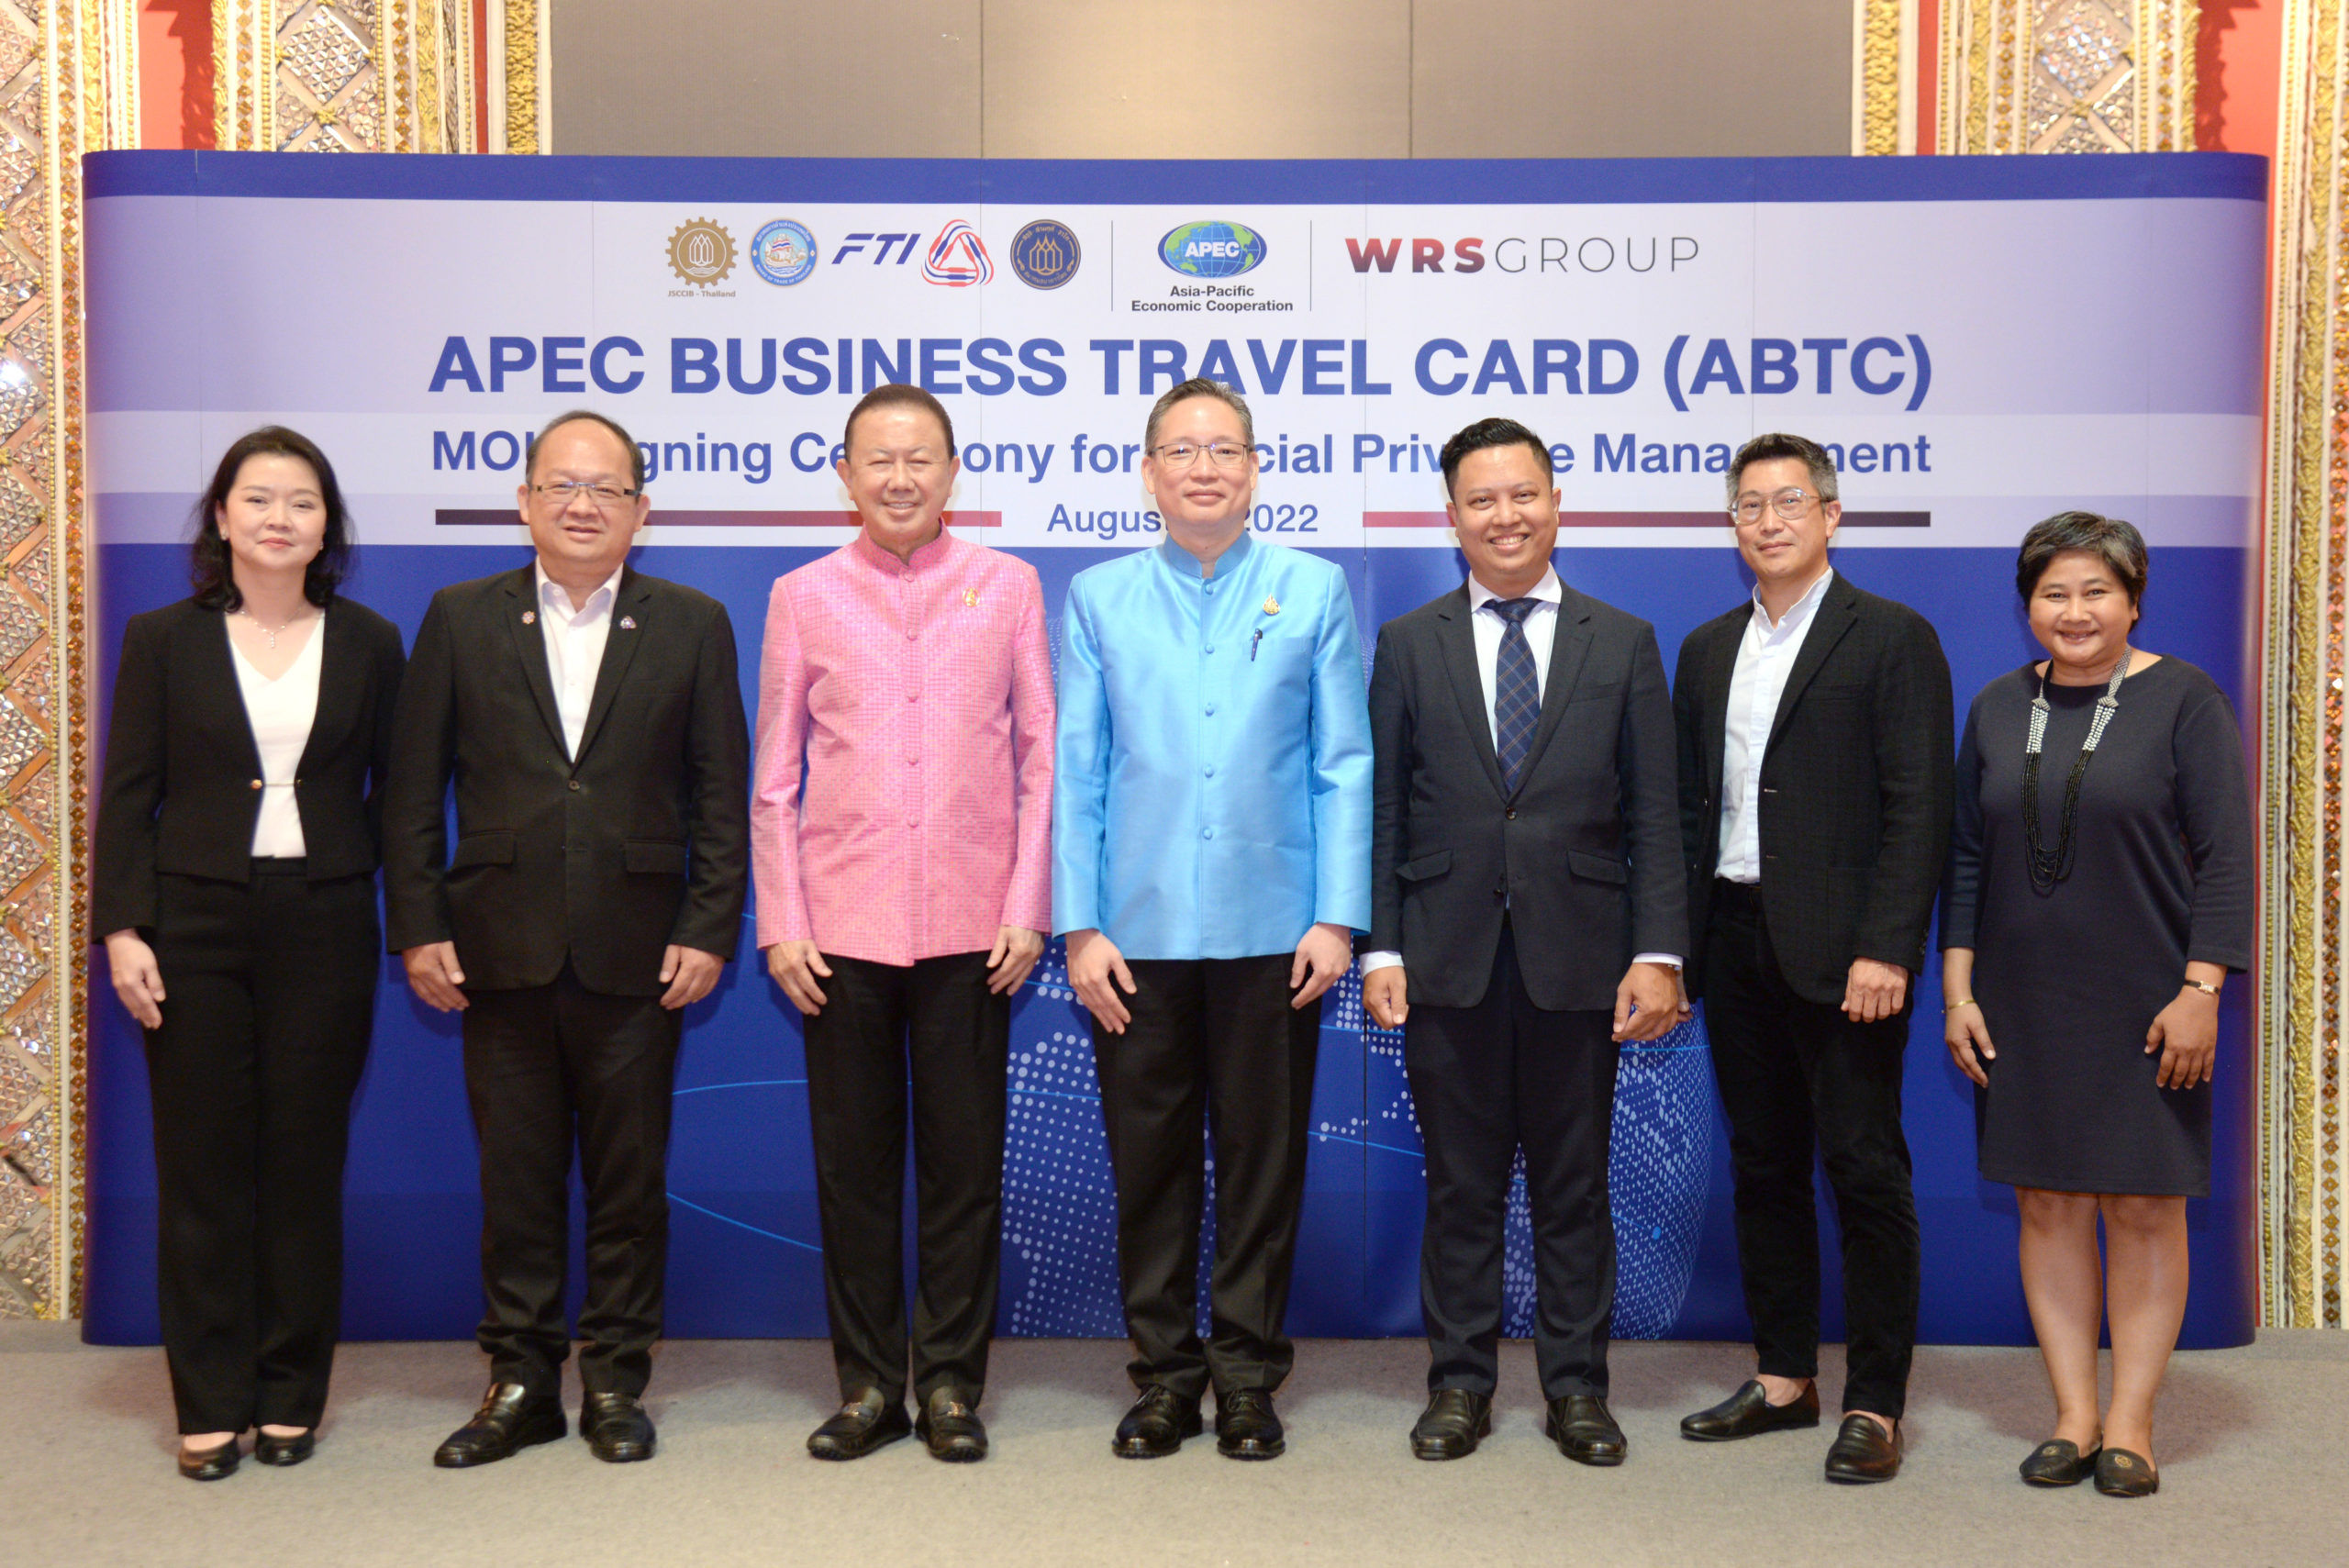 ยกระดับไลฟสไตล์ สำหรับผู้ถือบัตรการเดินทาง APEC สู่เอกสิทธ์สุดพรีเมี่ยม!